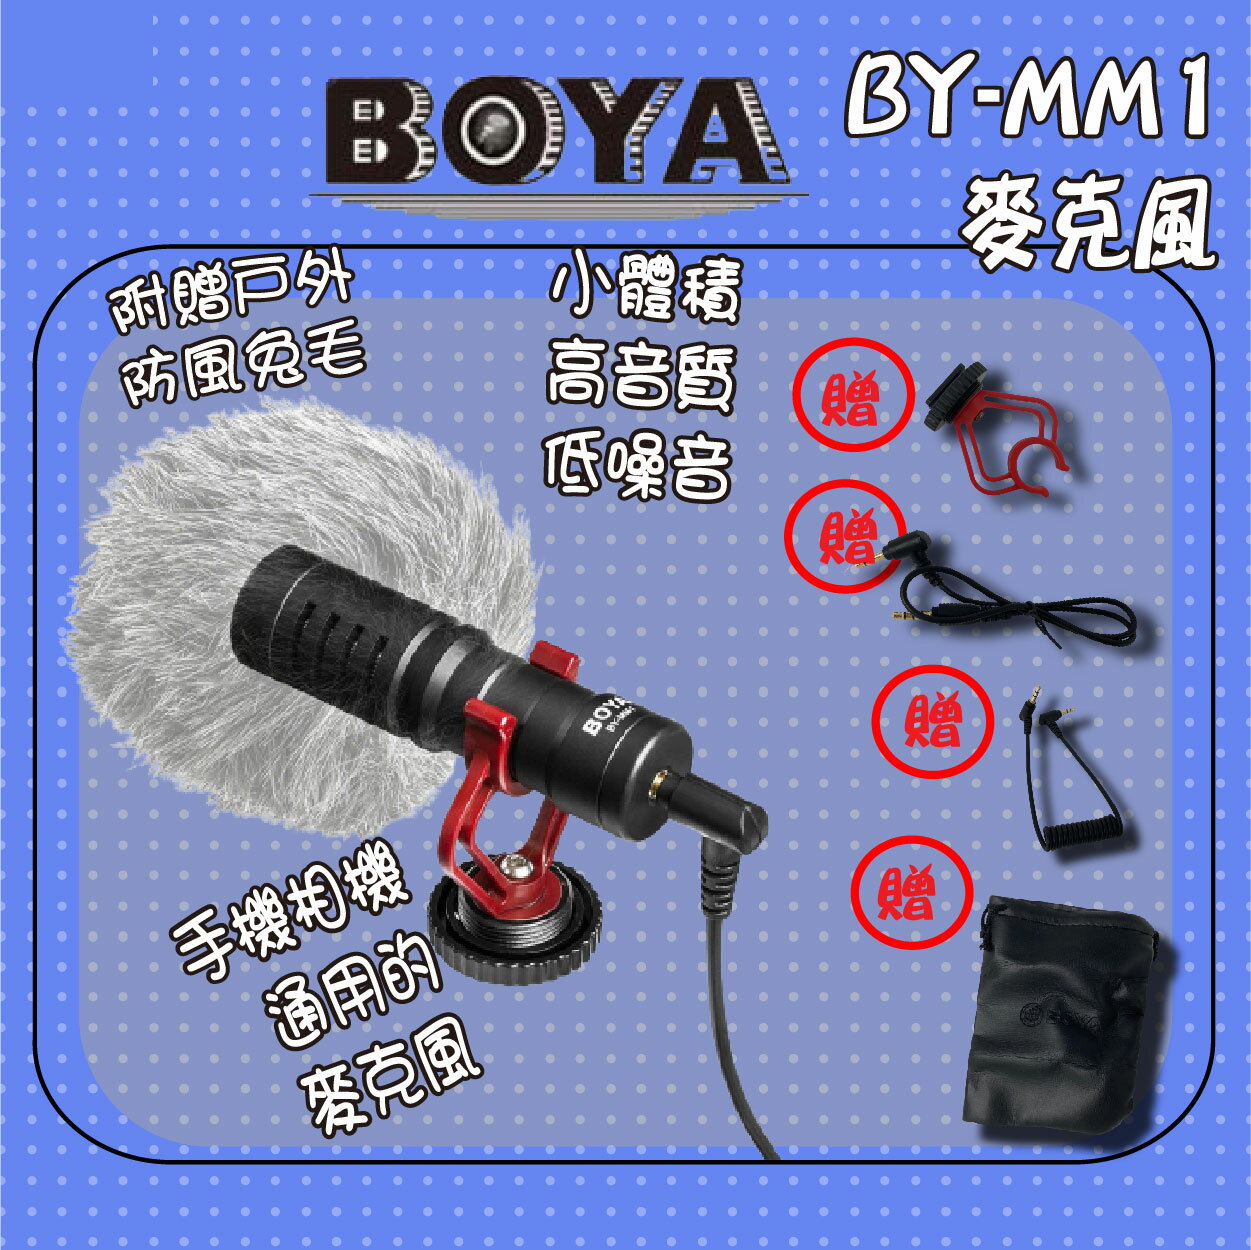 【公司新貨】BOYA BY-MM1通用型電容式高音質麥克風 話筒錄音 採訪 錄影 BOYA 麥克風 視訊會議【APP下單9%點數回饋】